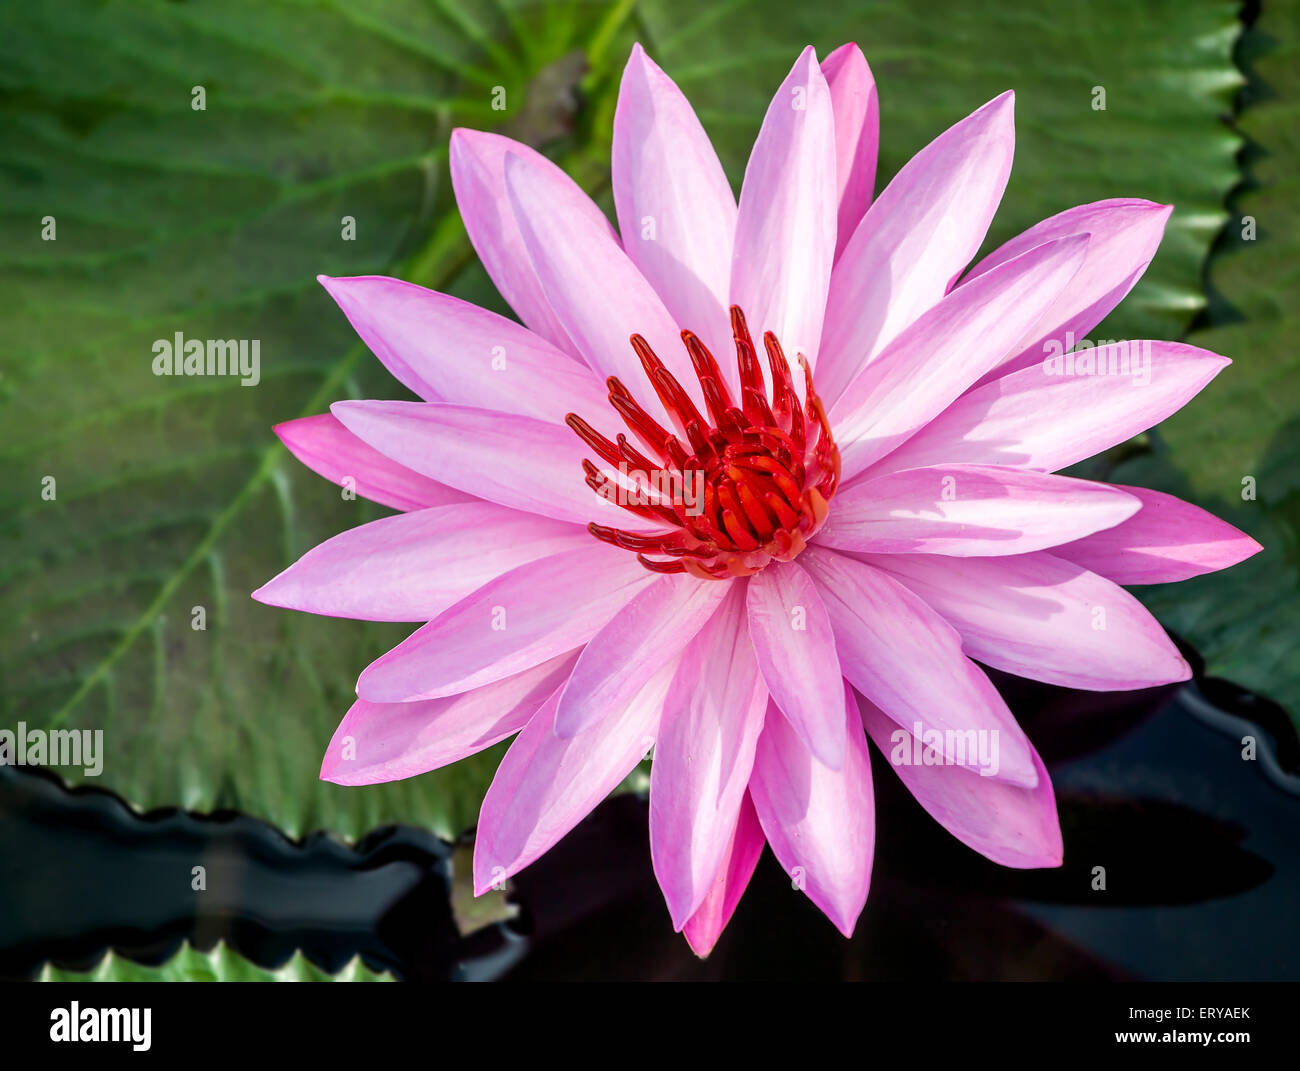 Beautiful pink water lily closeup Stock Photo